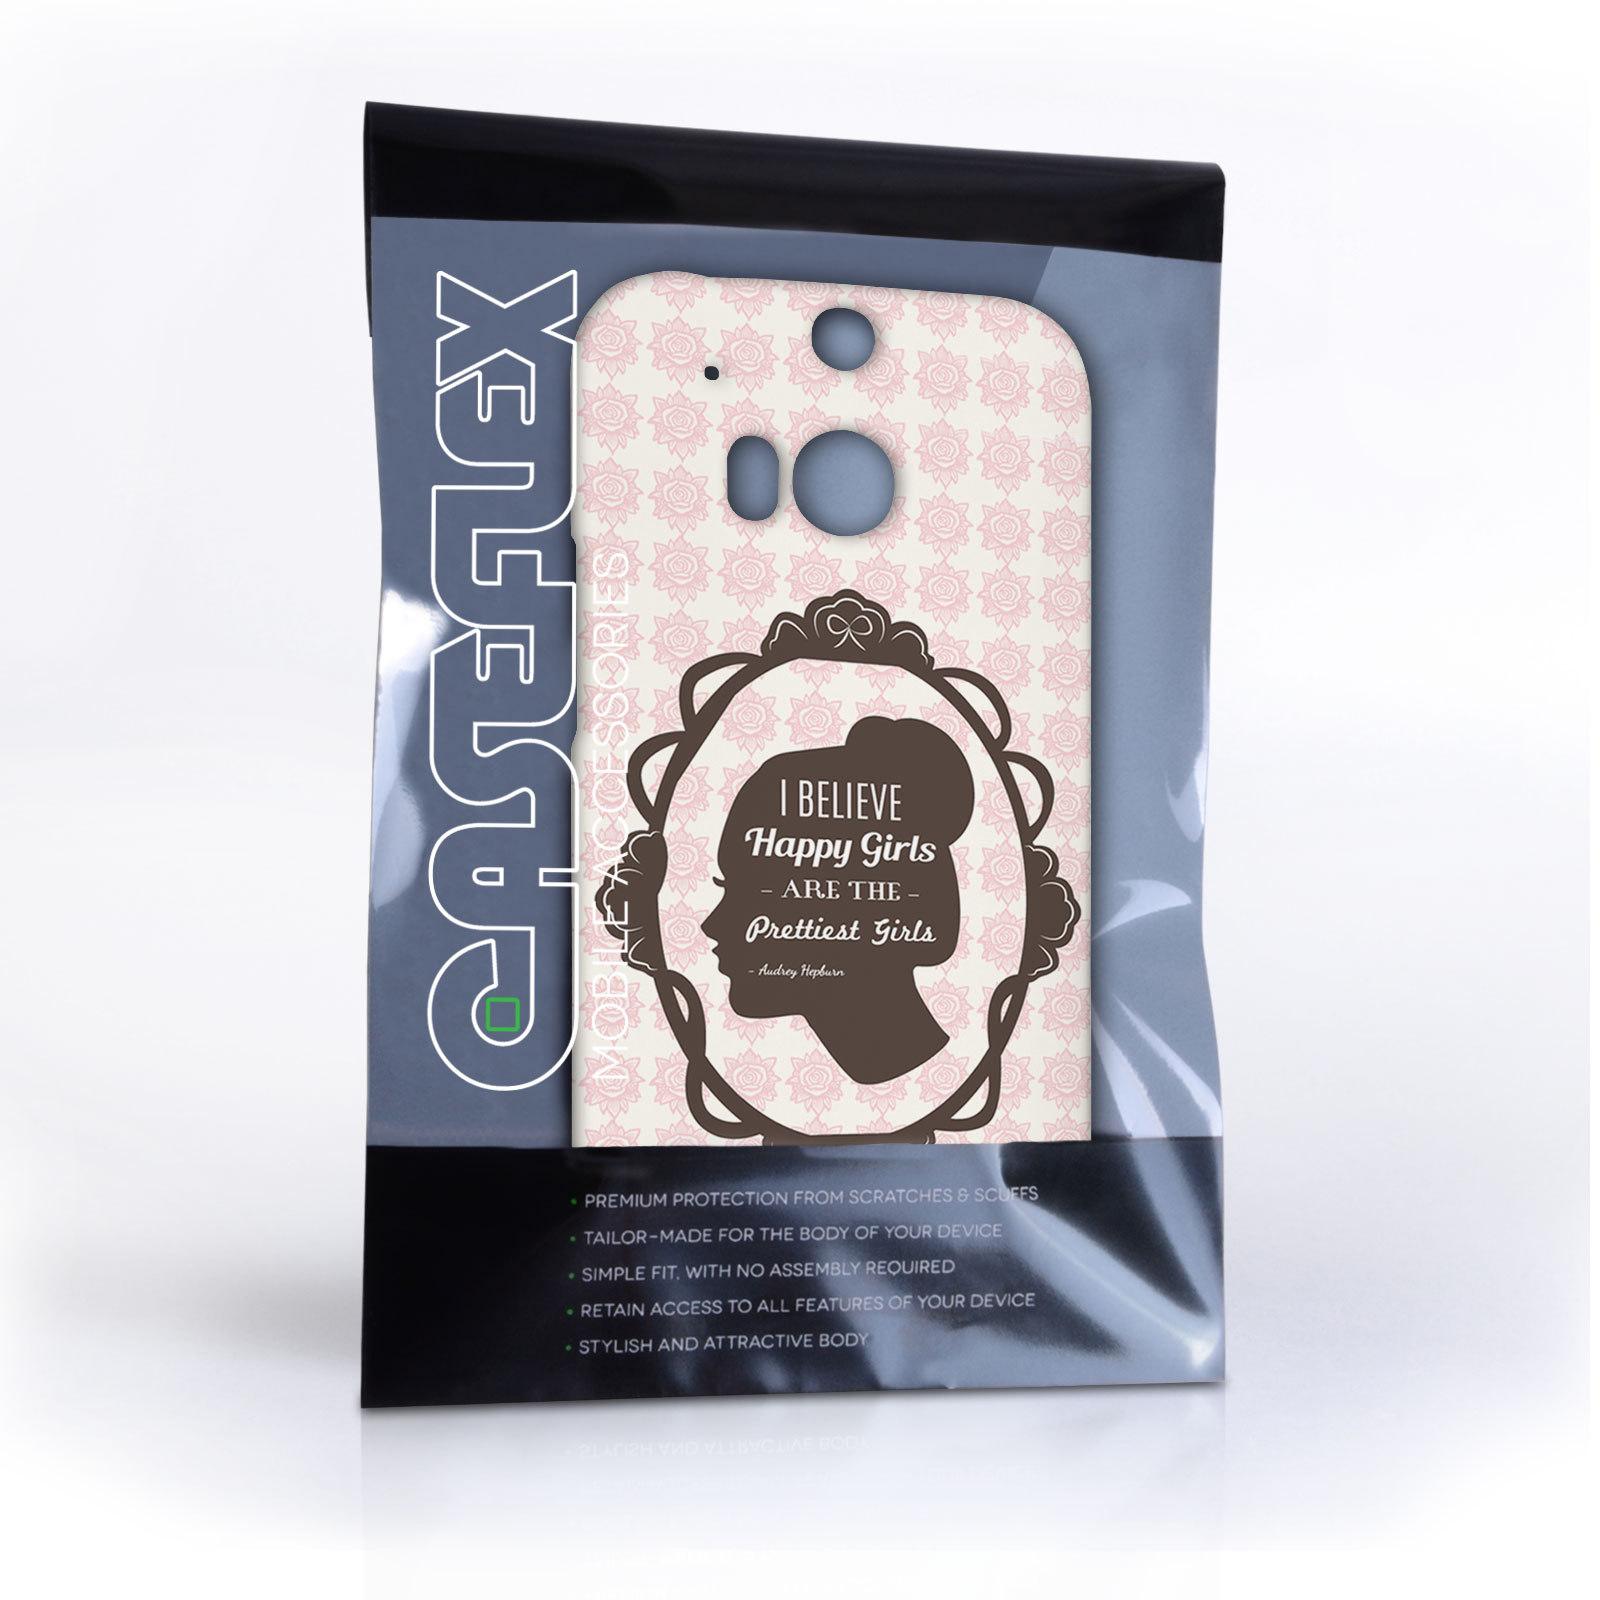 Caseflex HTC One M8 Audrey Hepburn ‘Happy Girls’ Quote Case